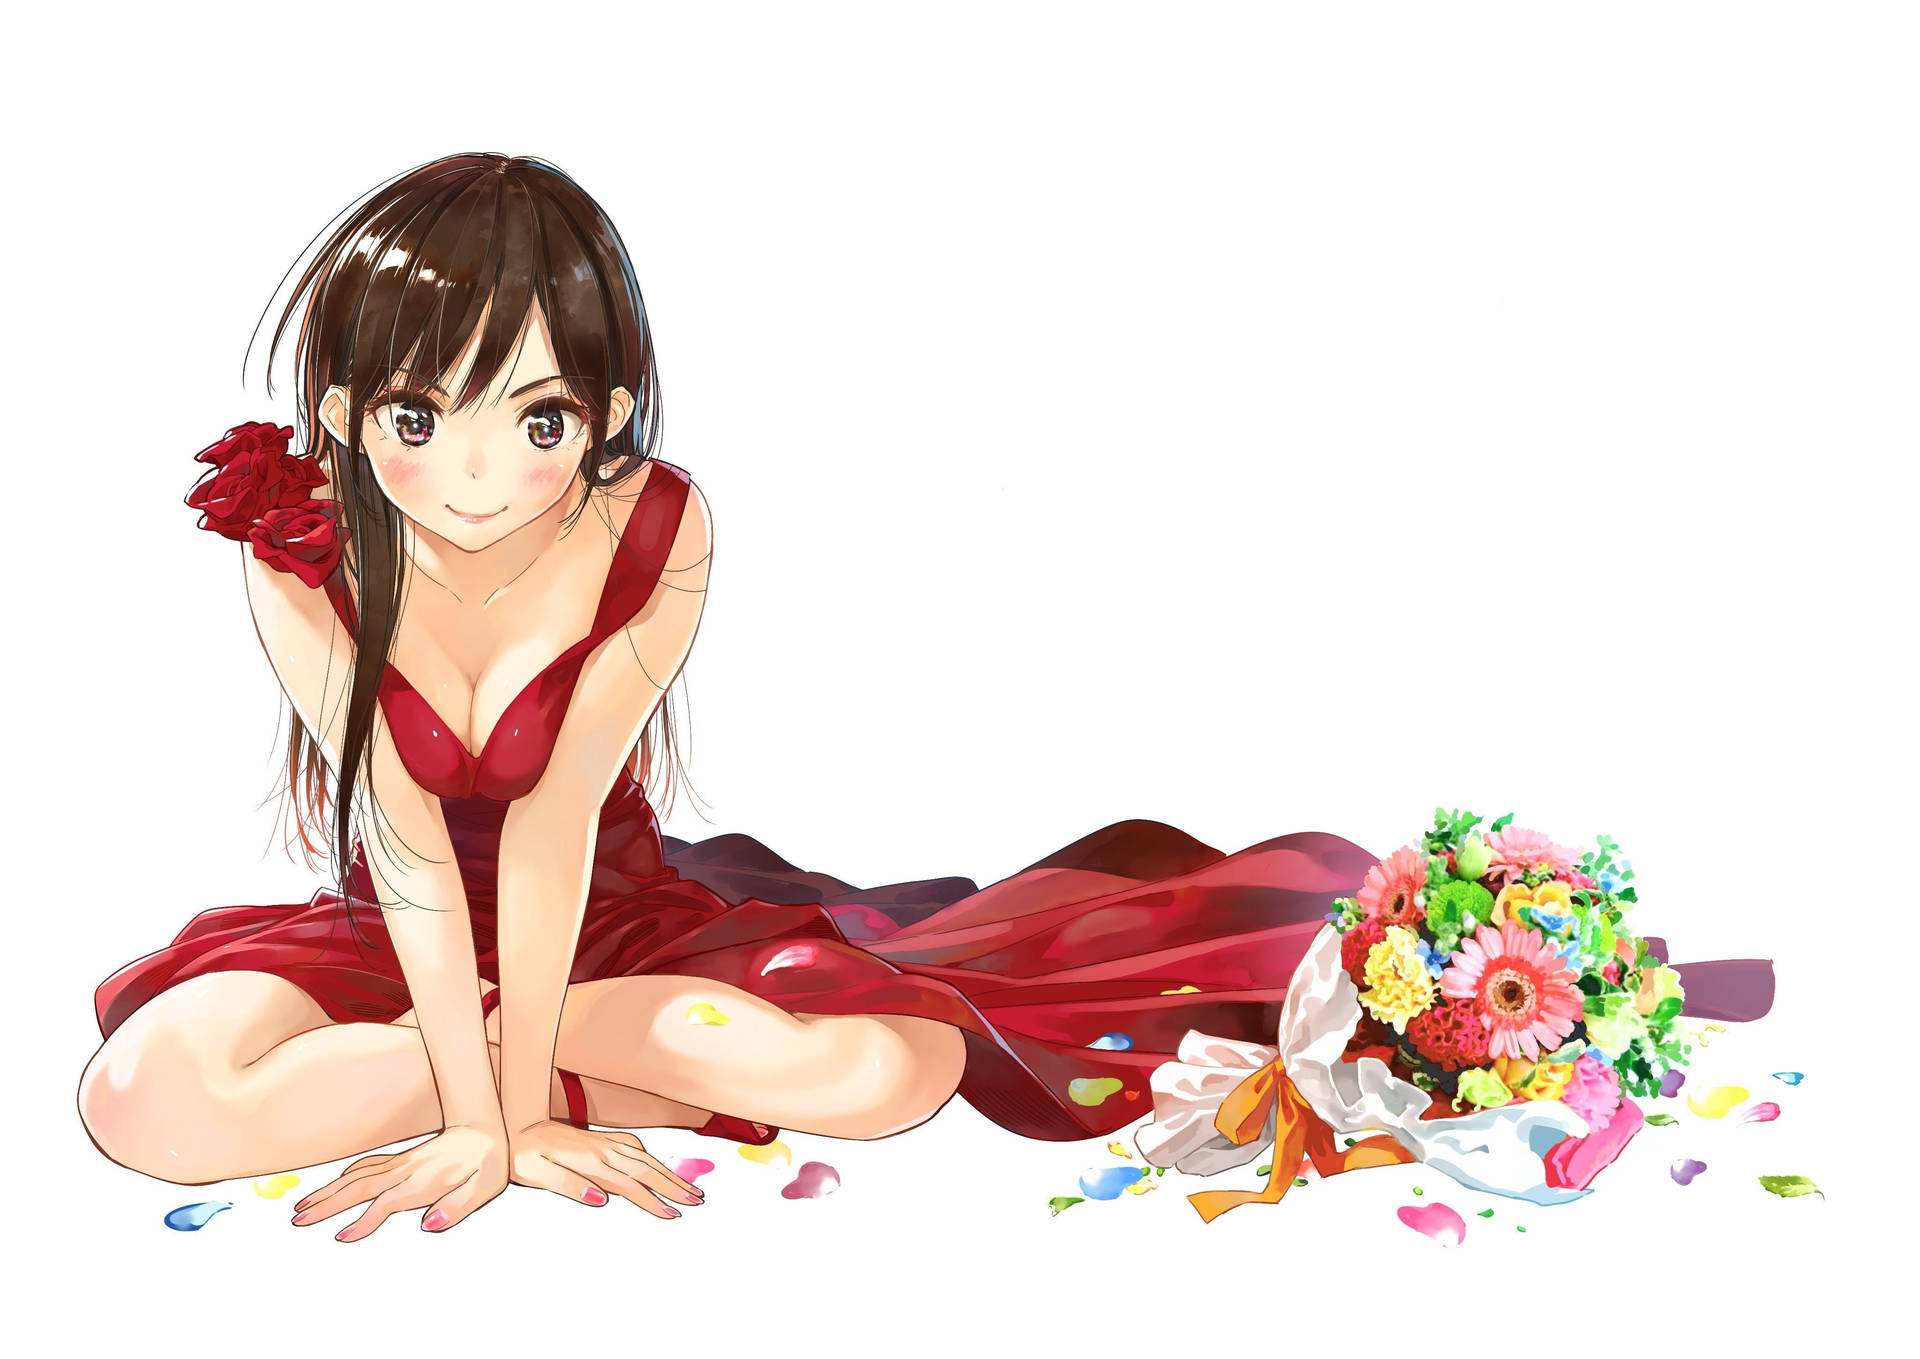 Rent A Girlfriend Chizuru In Red Dress Background